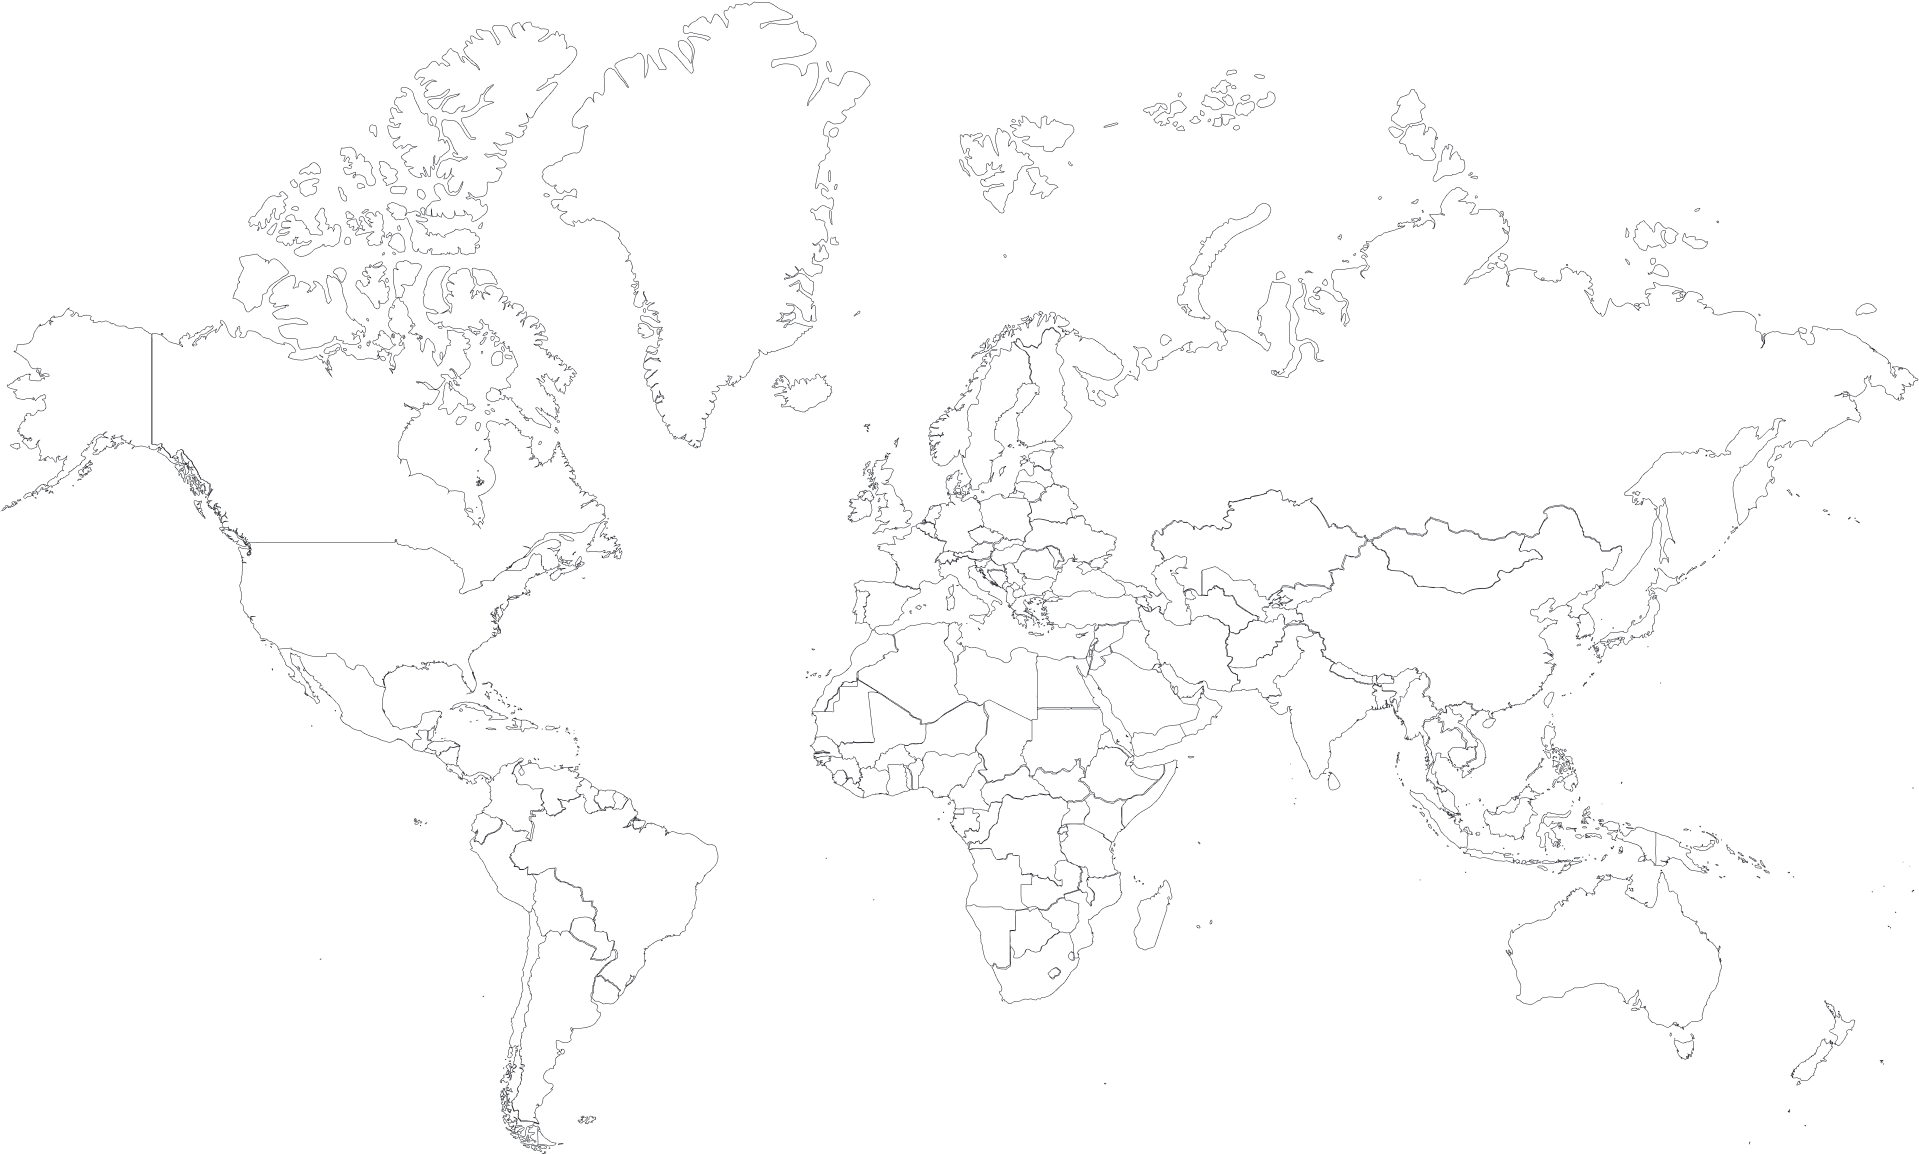 Пустая карта. Карта мира с границами государств белая. Контурная карта мира с границами стран. Политическая карта мира белая. Карта мира черно белая для печати в хорошем качестве.